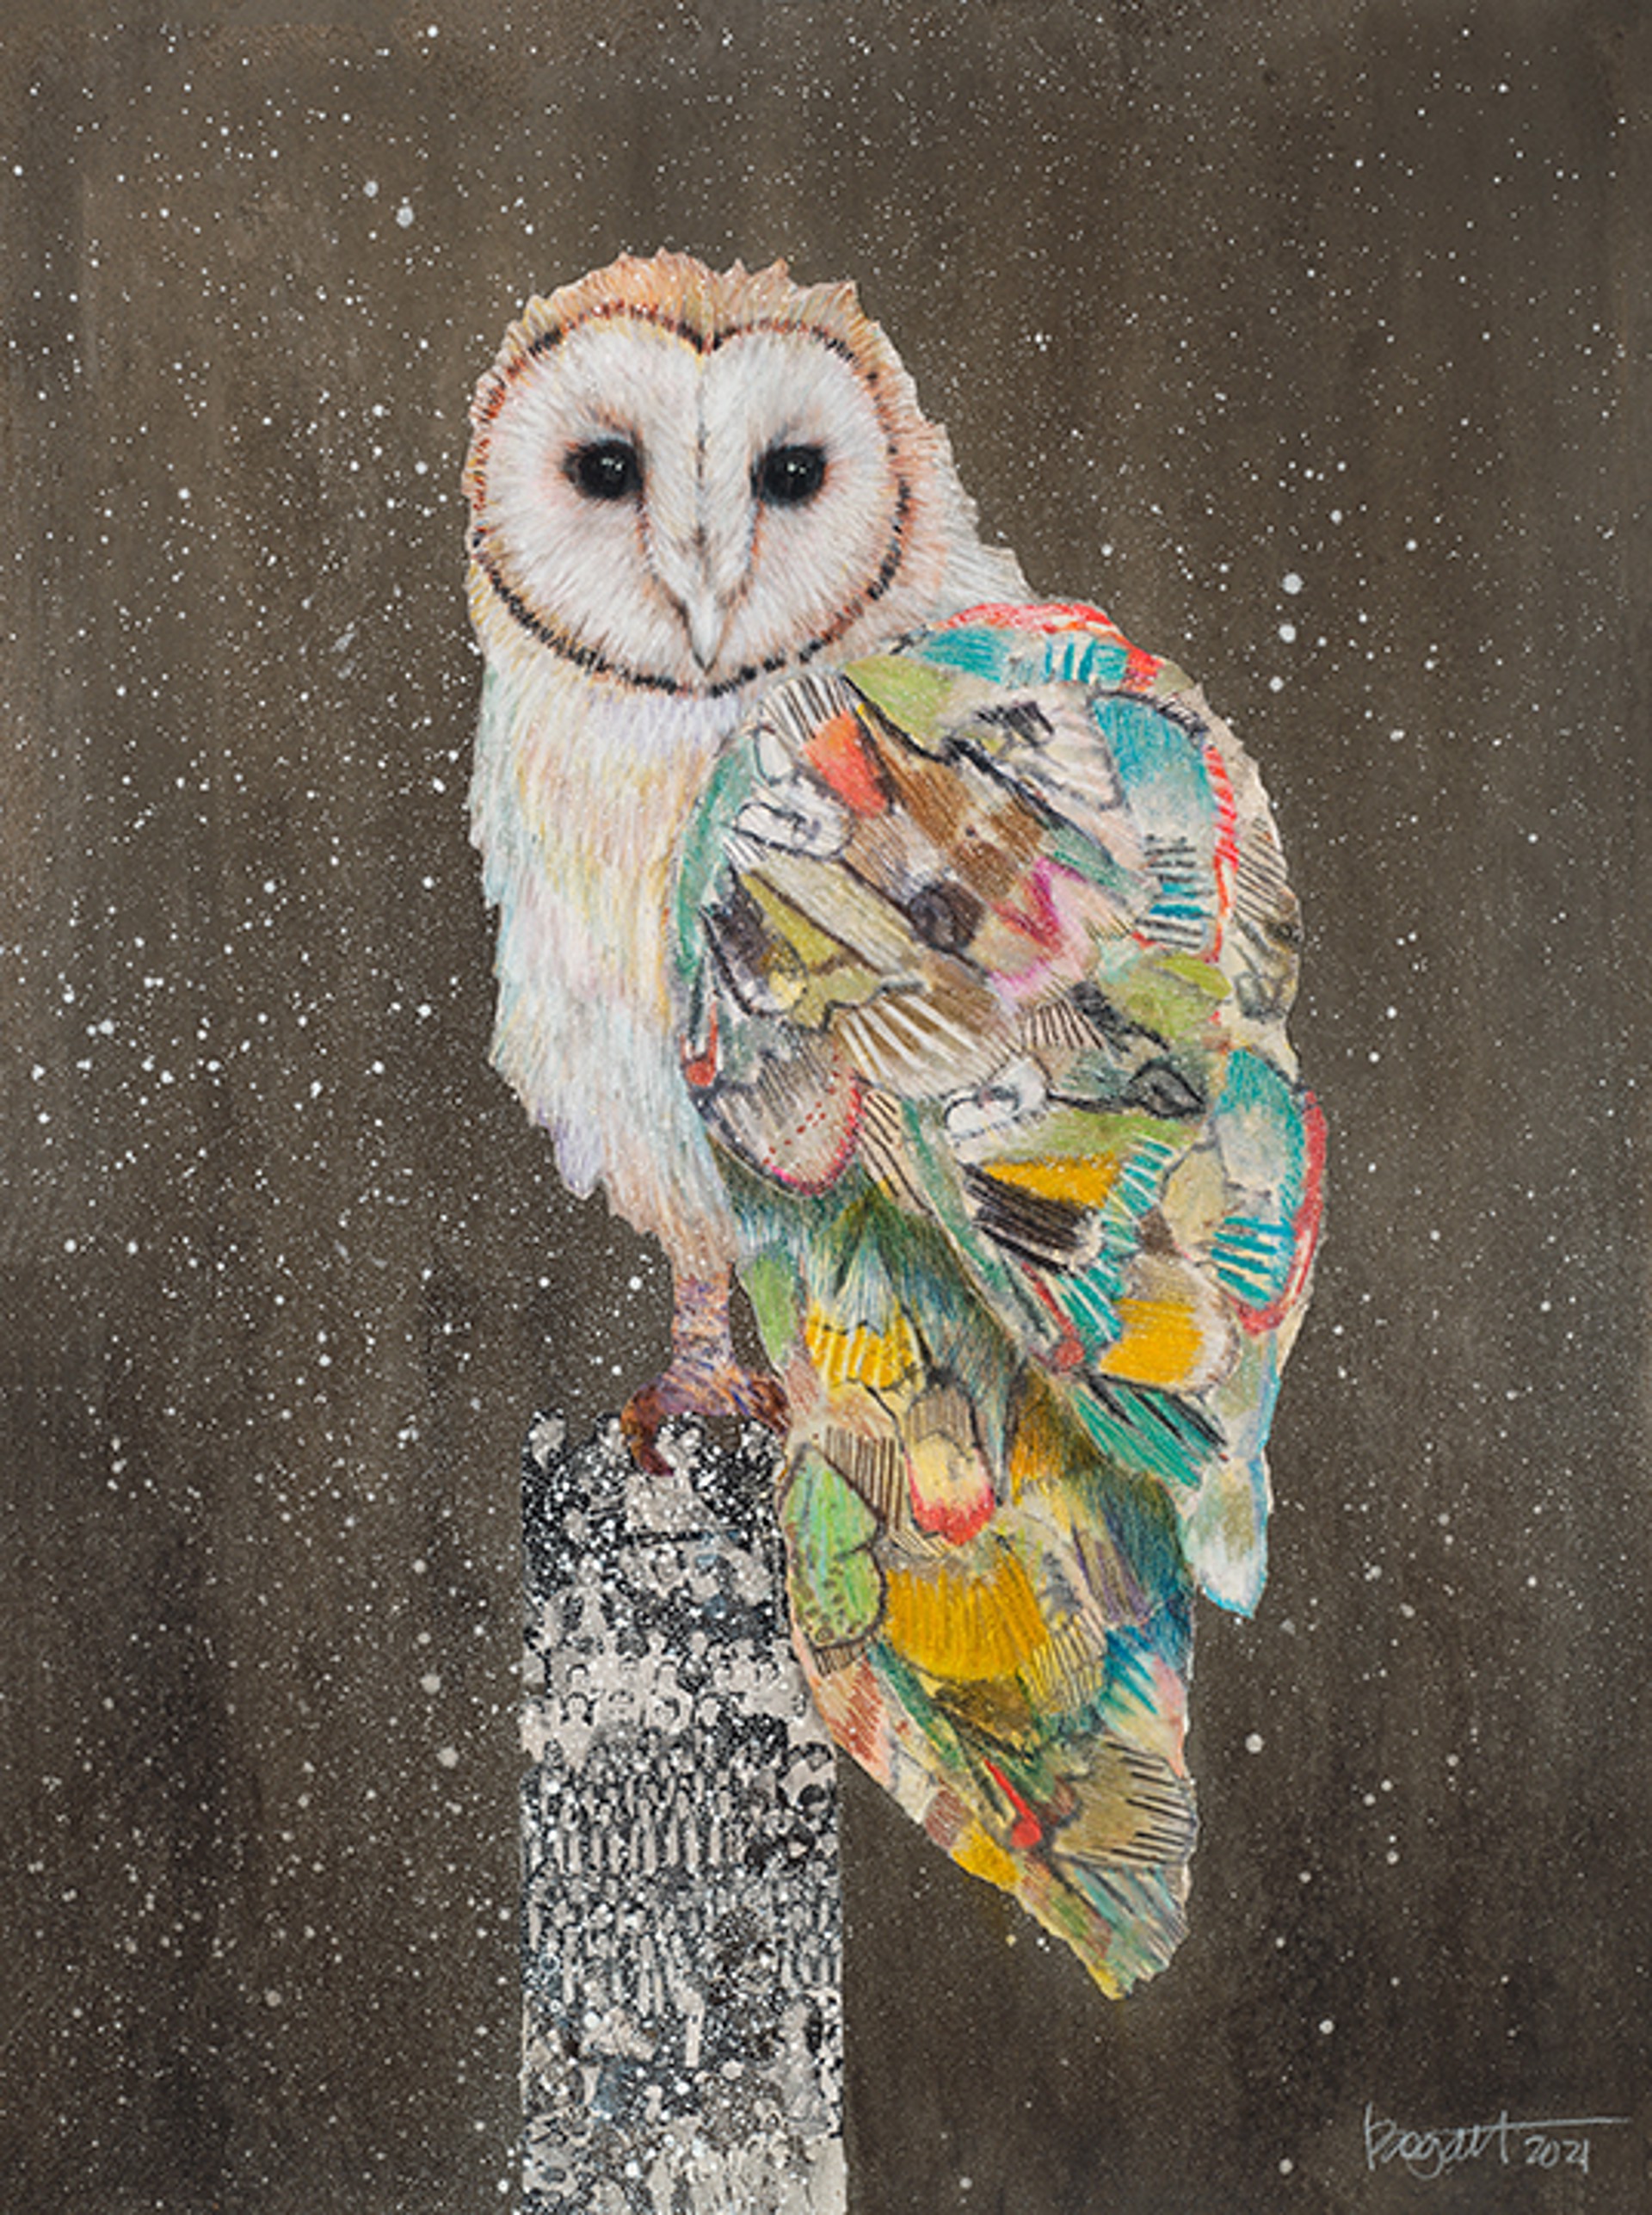 Barn Owl on a Snowy Night 2 by Brenda Bogart - Prints